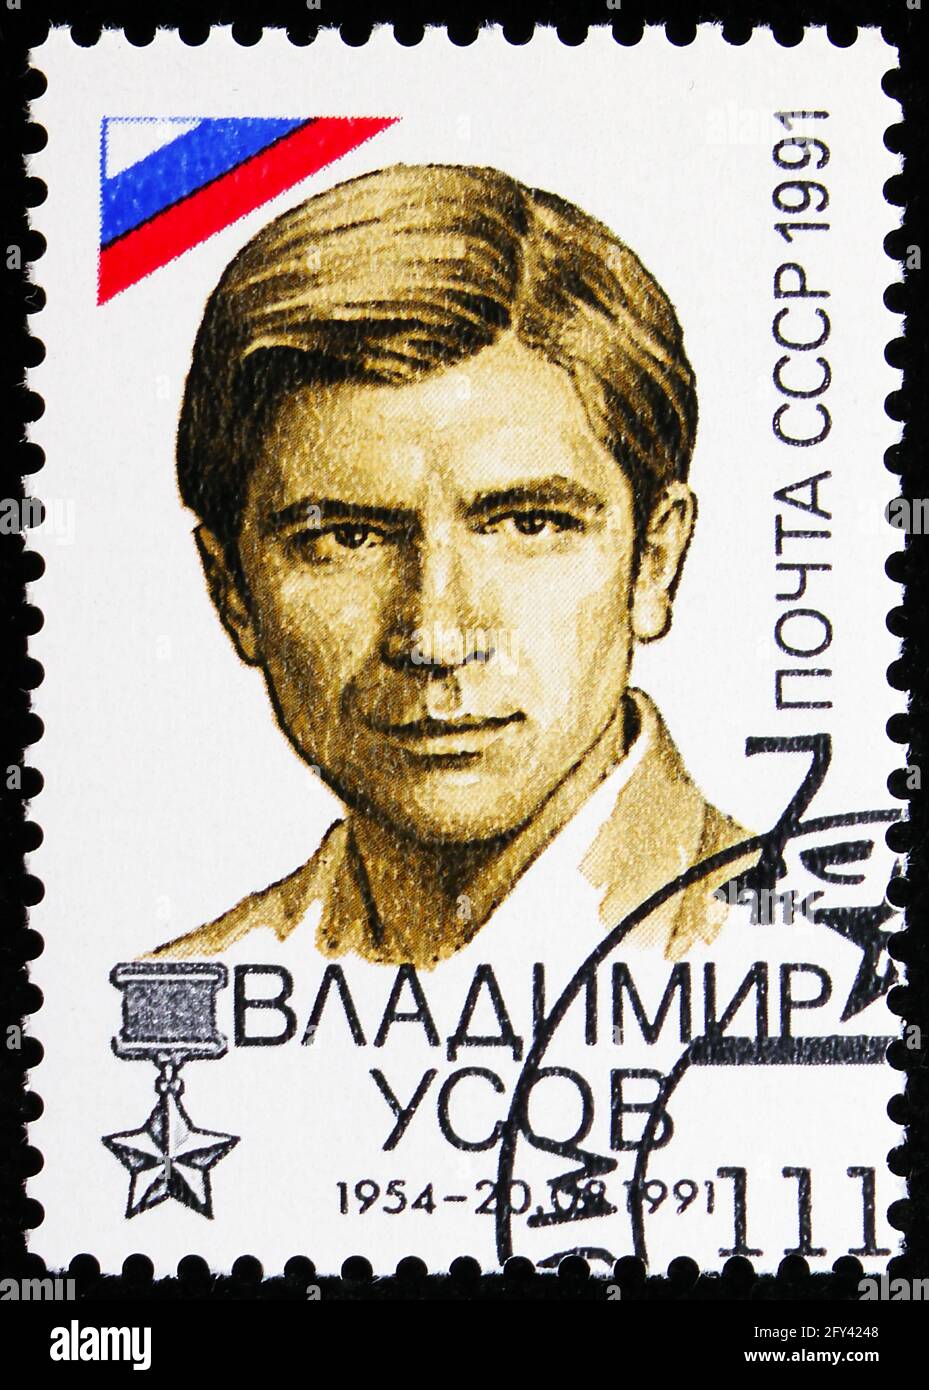 MOSCÚ, RUSIA - 31 DE AGOSTO de 2019: Sello postal impreso en la Unión Soviética (Rusia) muestra Vladimir Usov, derrota de la serie de intento de golpe, alrededor de 1991 Foto de stock